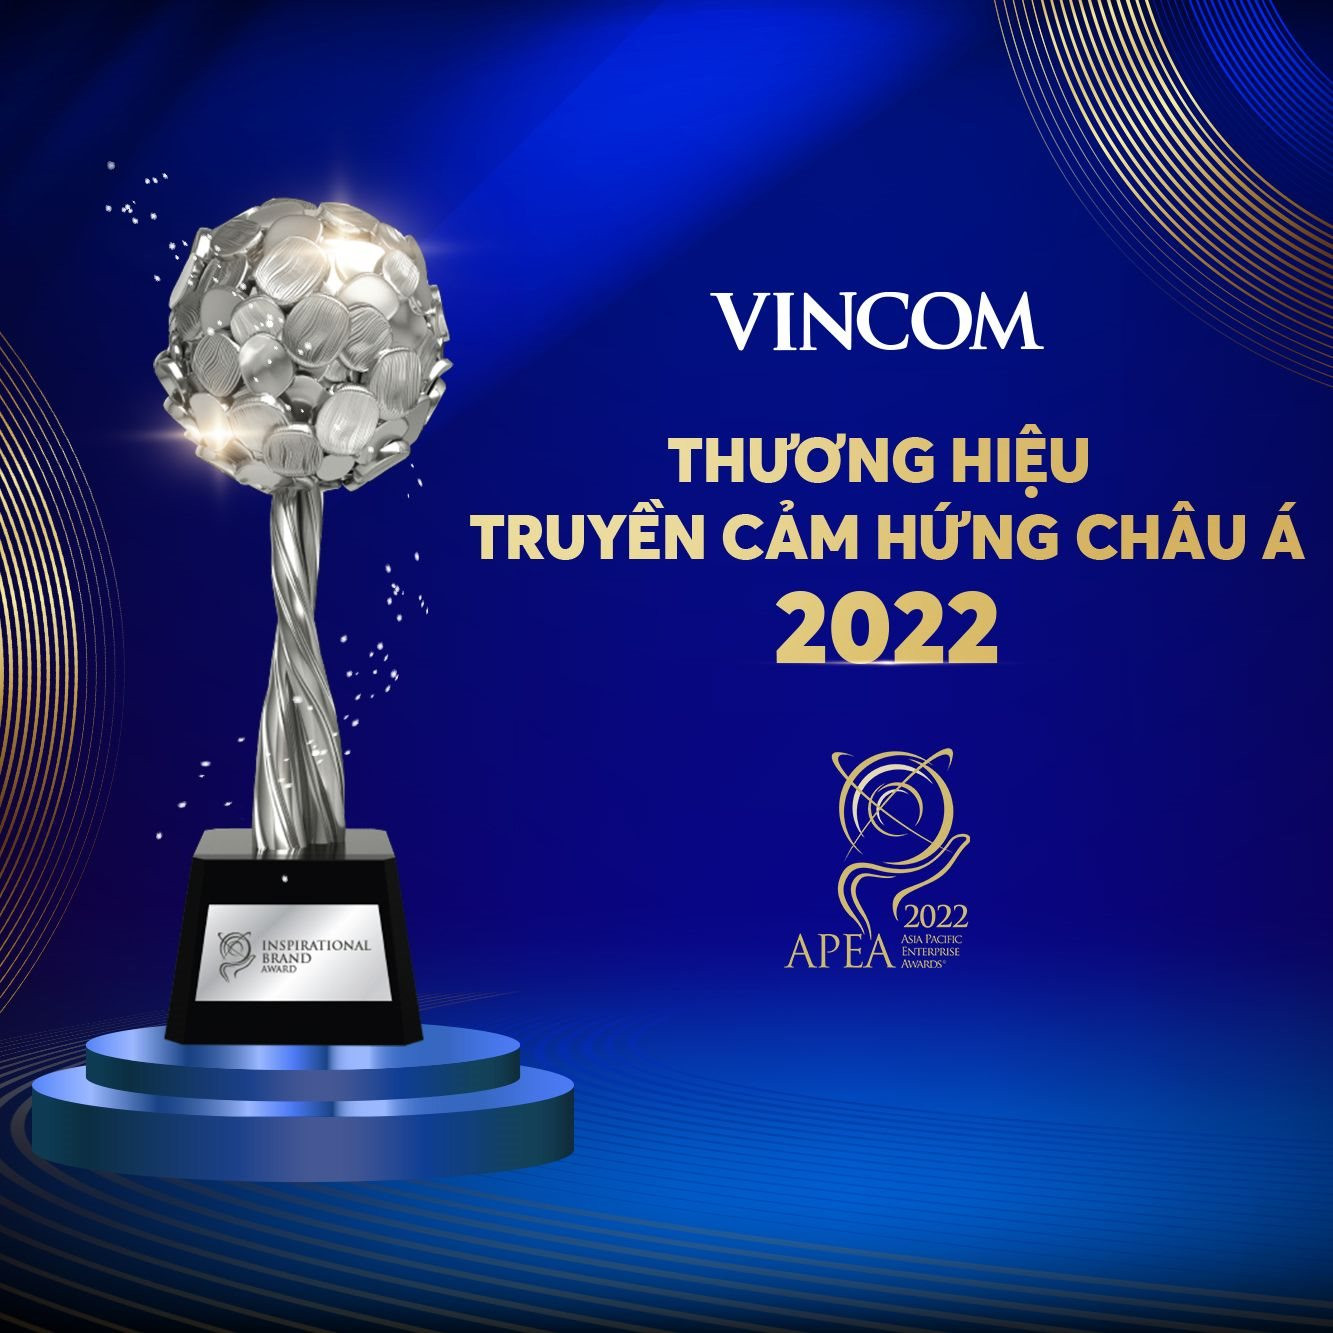 Vincom Retail nhận Giải thương hiệu truyền cảm hứng châu Á - Thái Bình Dương 2022 tại APEA